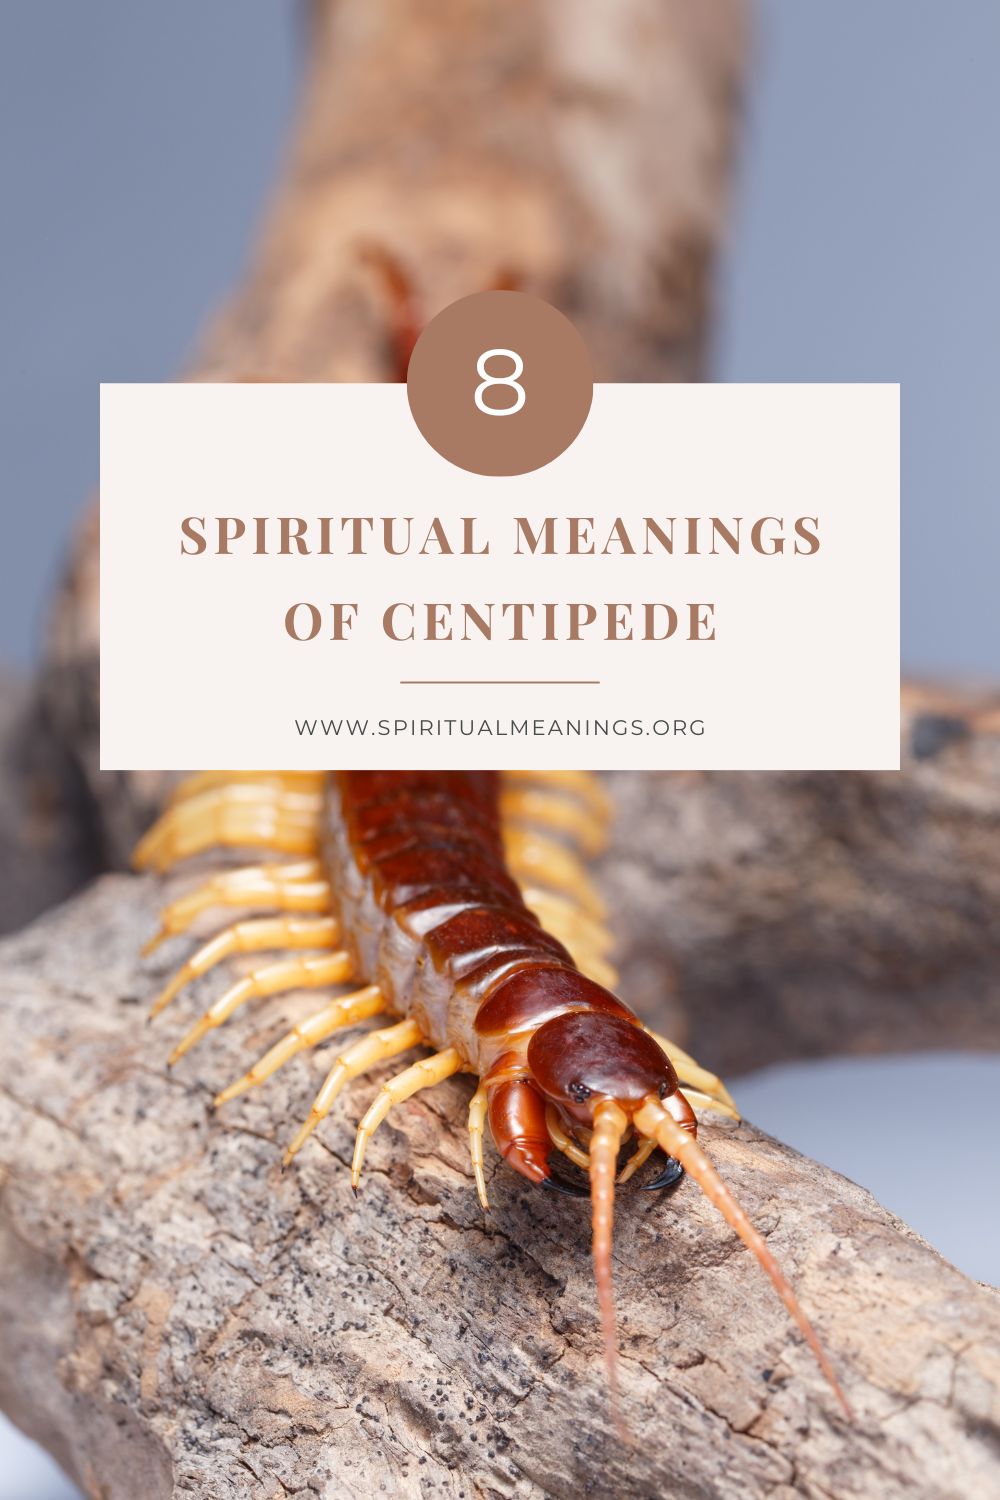 what do centipedes symbolize?